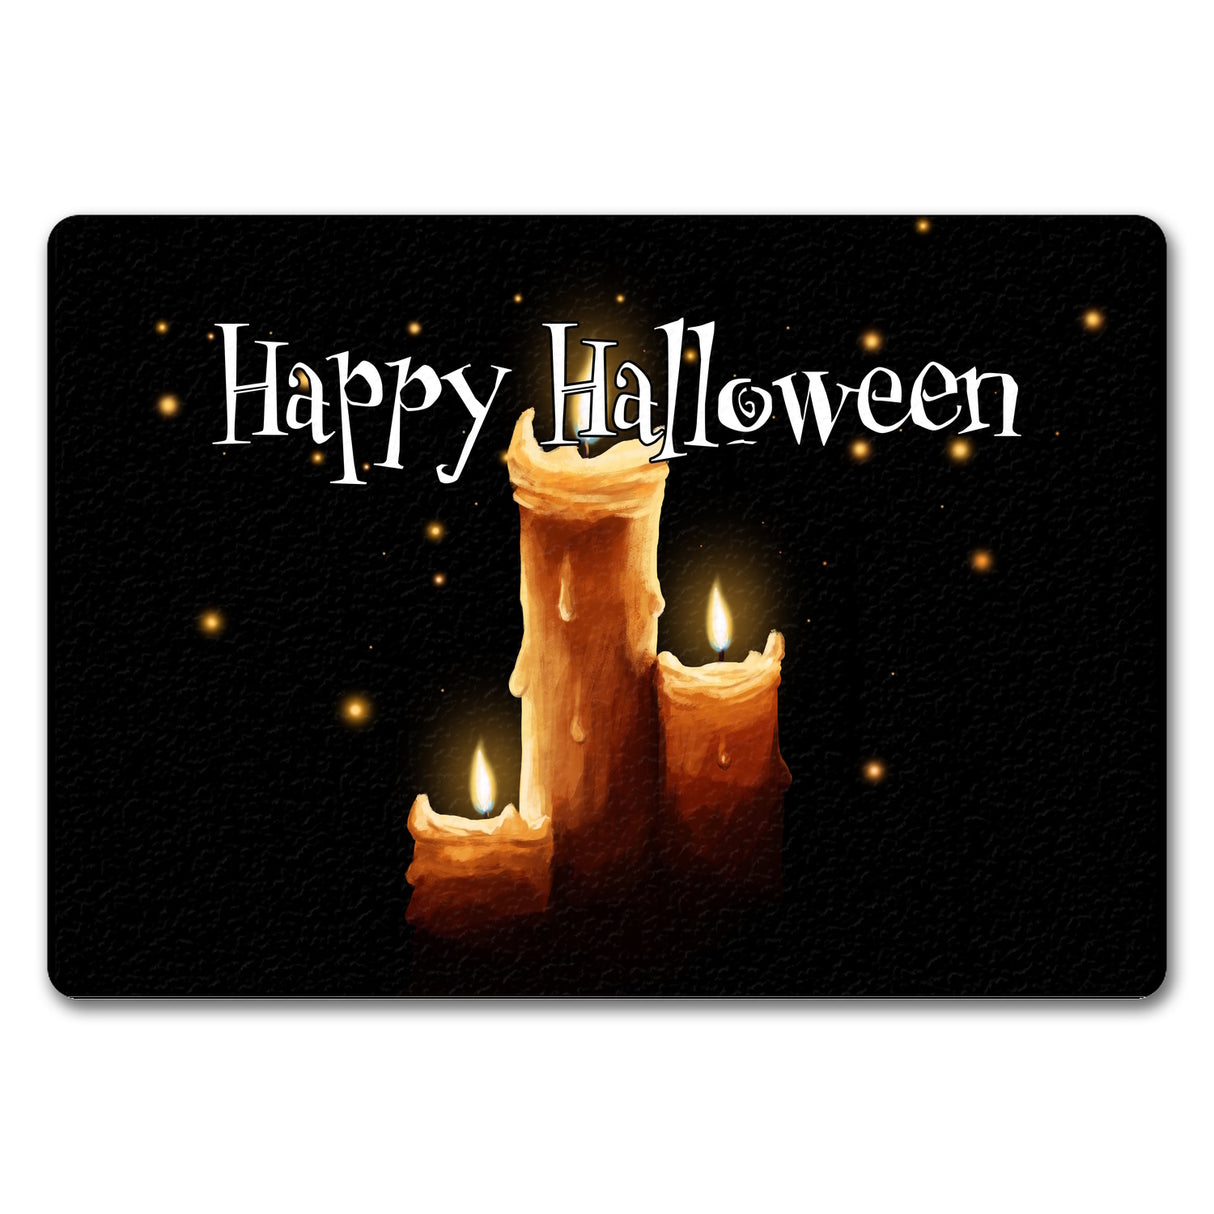 Fußmatte in 35x50 cm mit Kerze Motiv und Happy Halloween Schriftzug